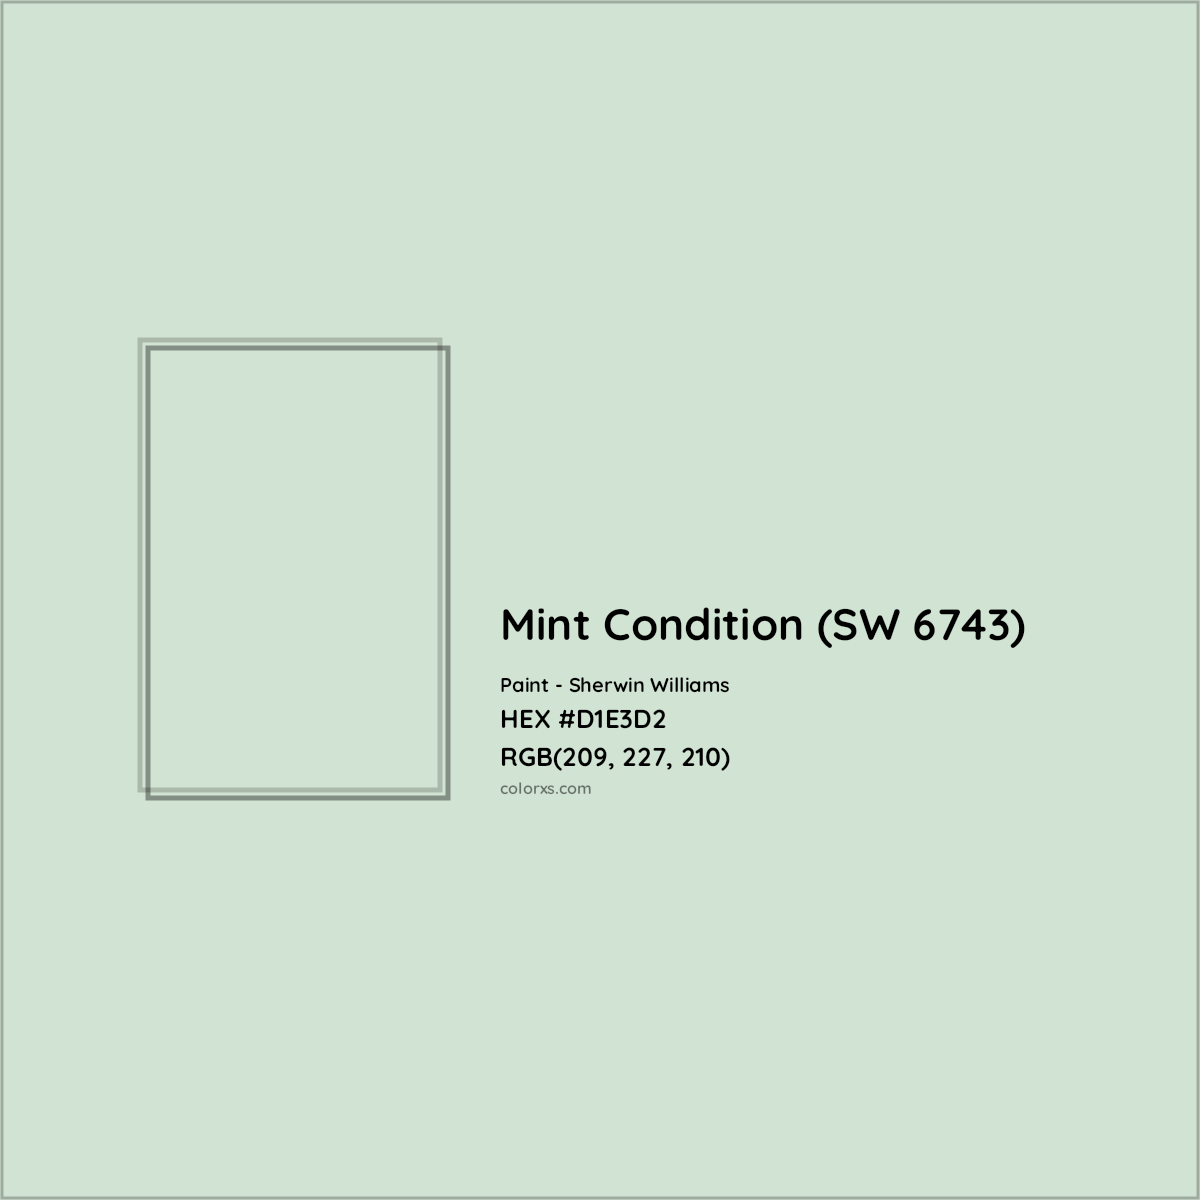 HEX #D1E3D2 Mint Condition (SW 6743) Paint Sherwin Williams - Color Code